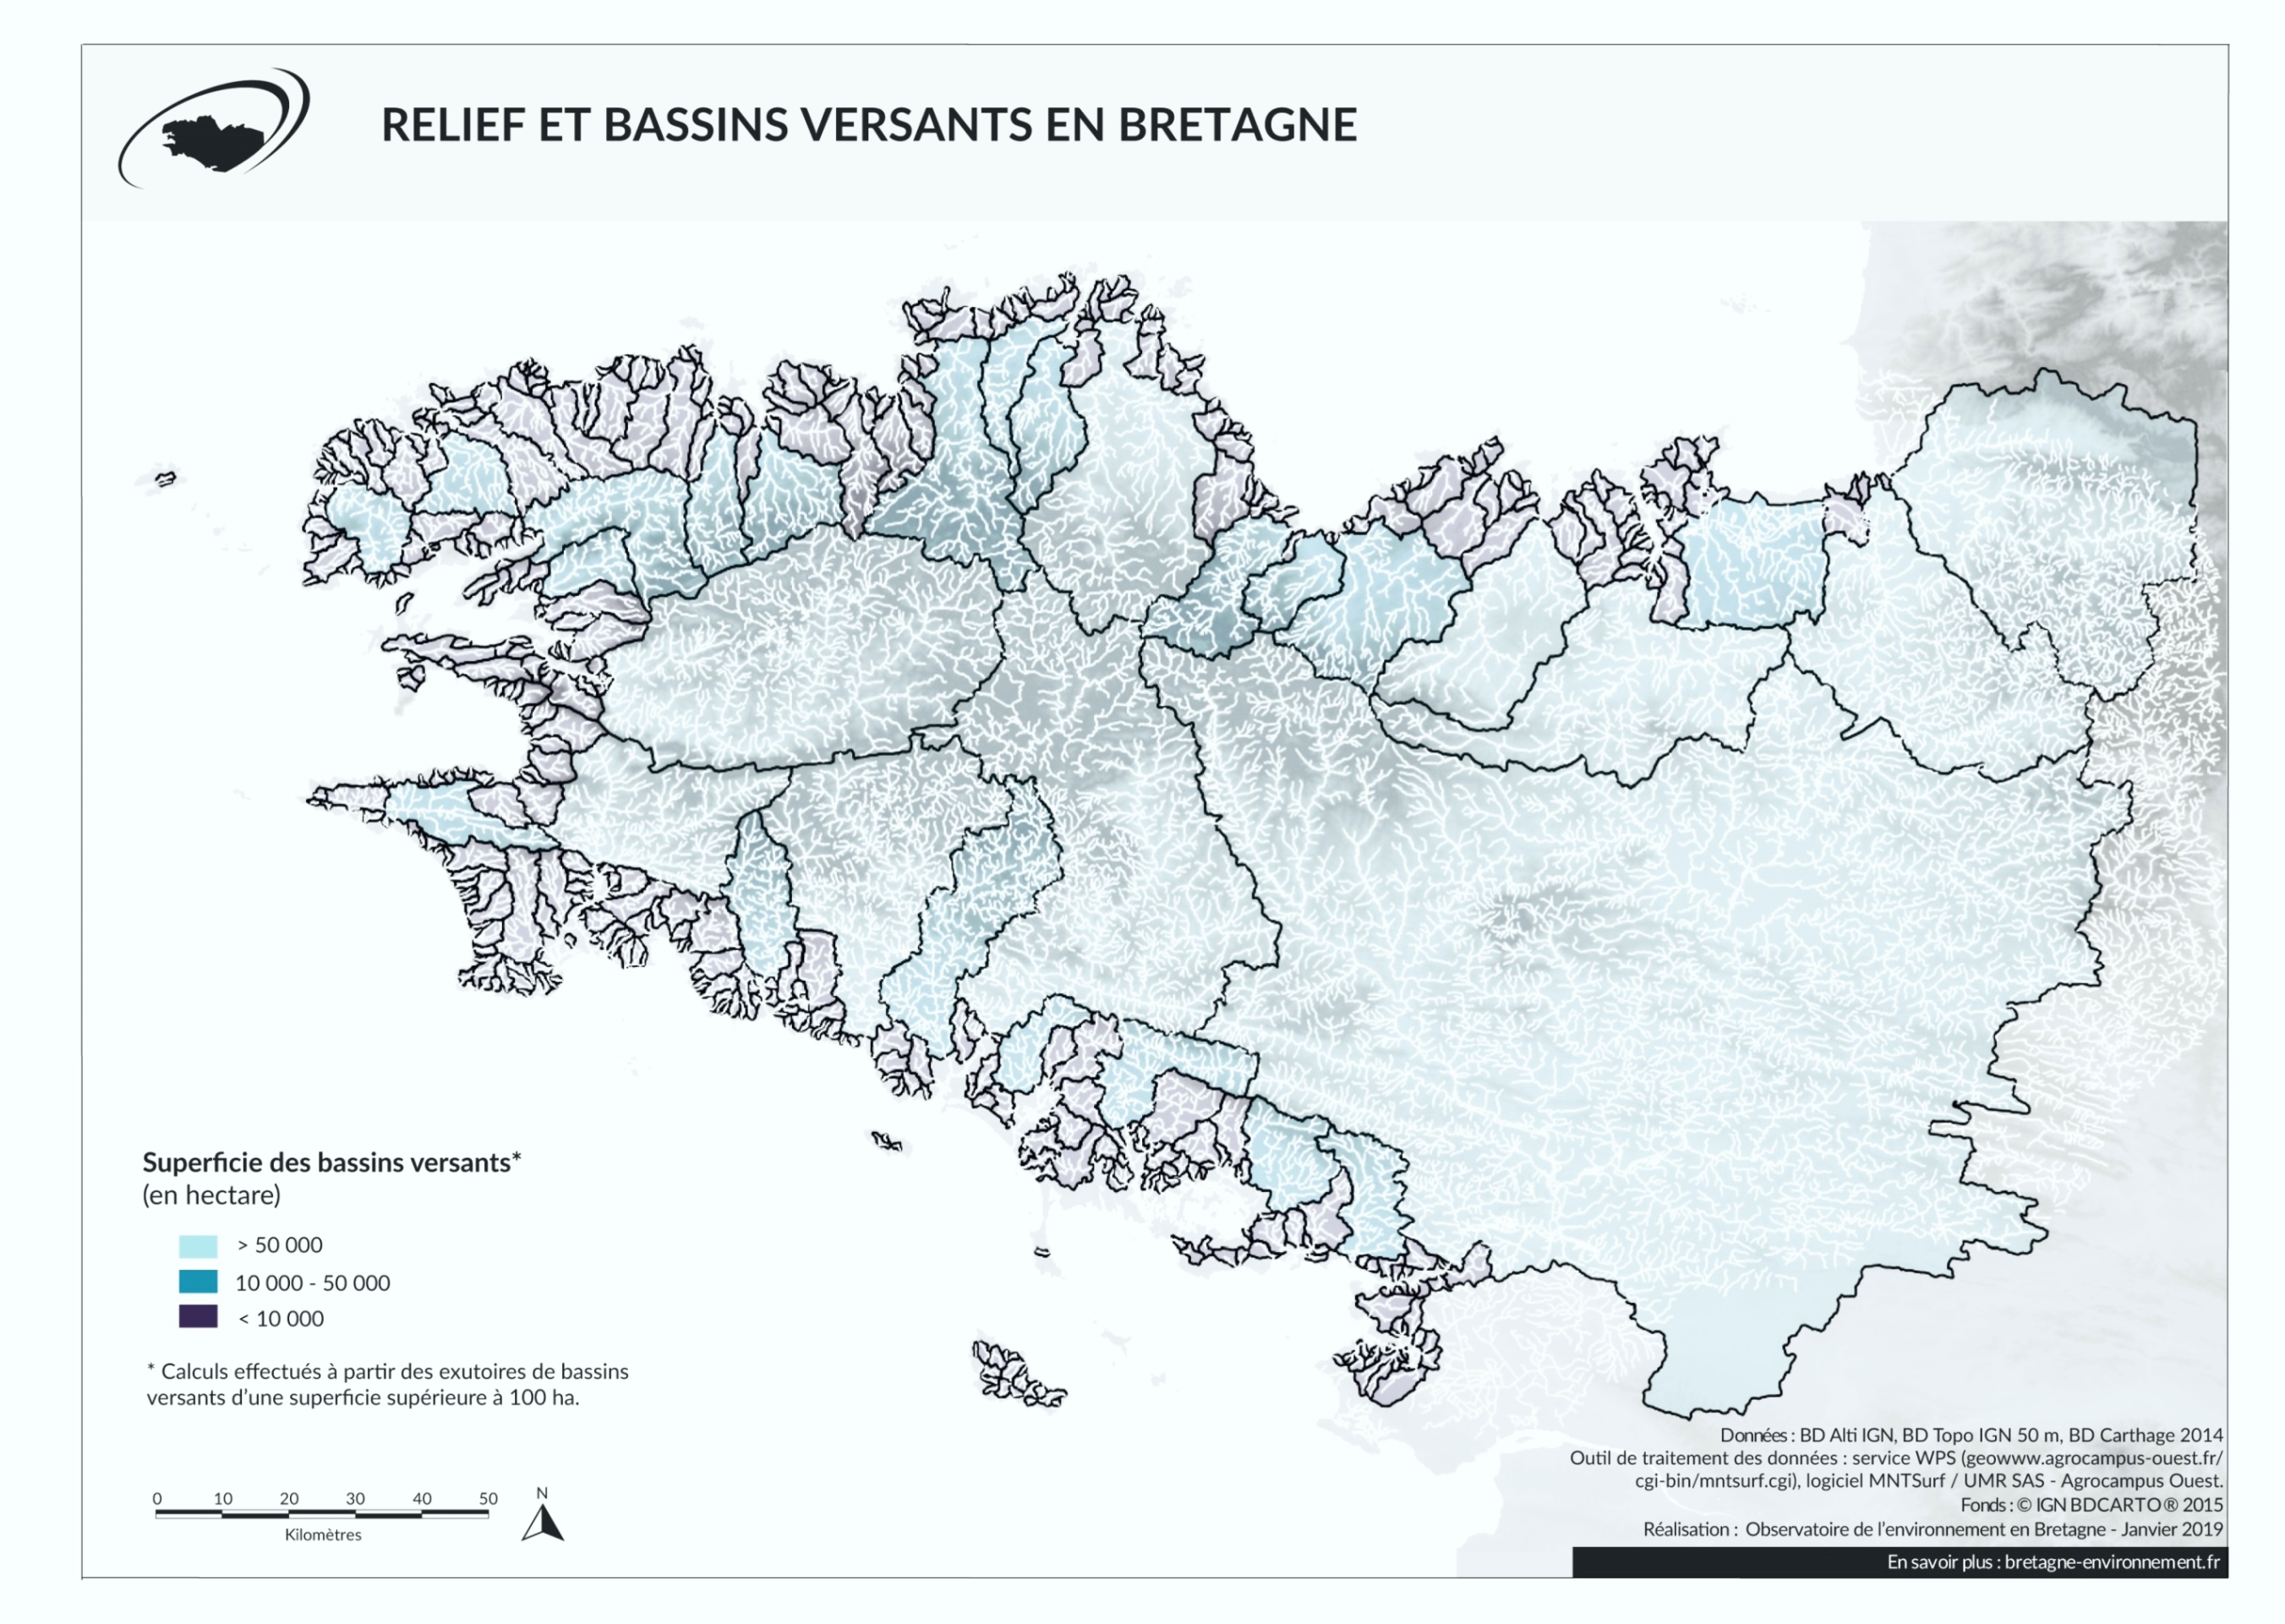 Les bassins versants (secteurs hydrographiques) en Bretagne